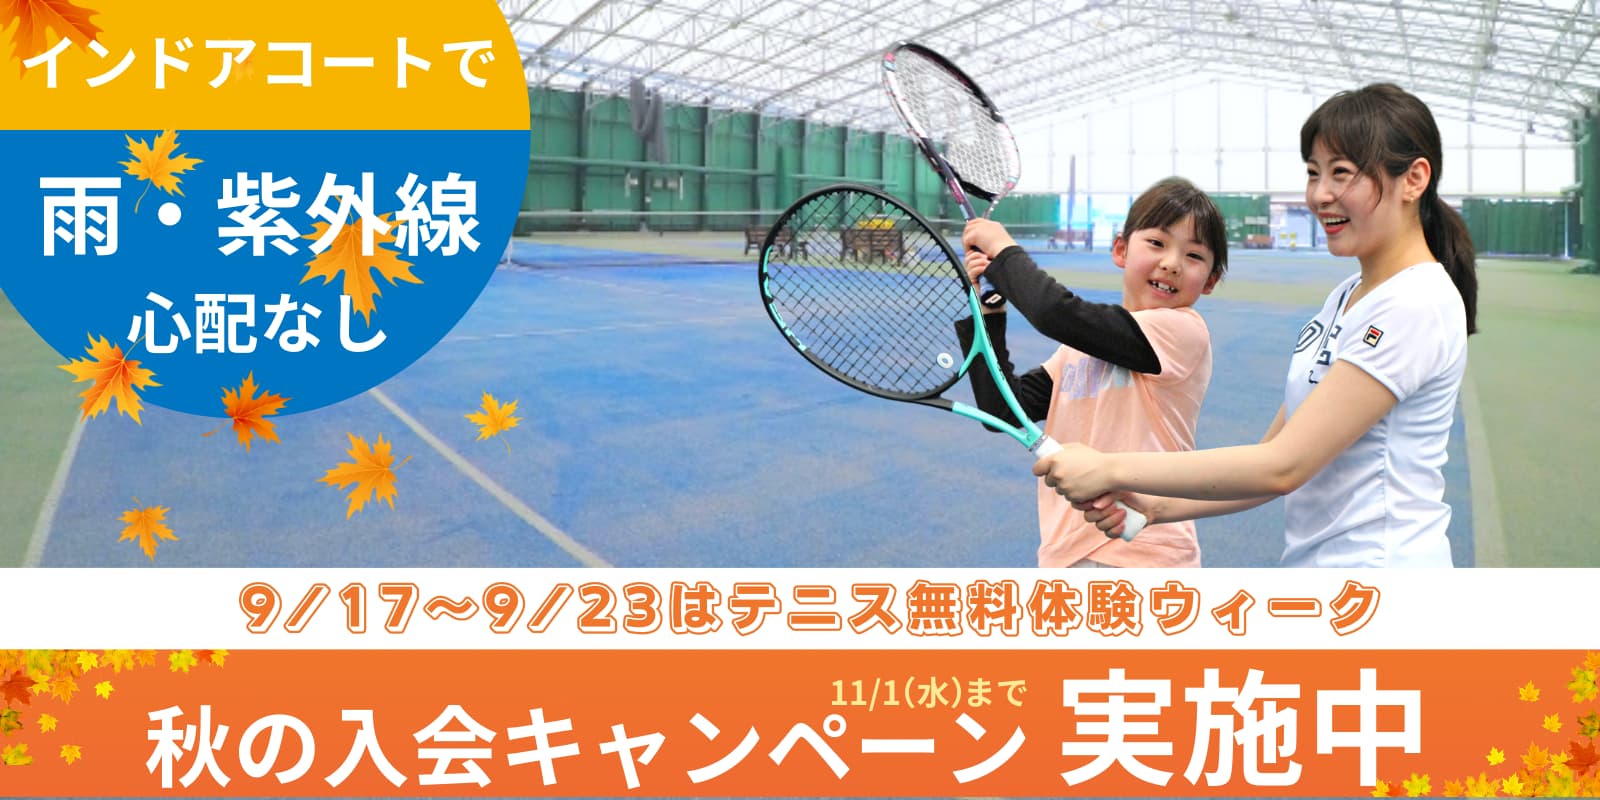 埼玉県川越市のテニスクラブ・スクール-インドアコート-リトルプリンステニスクラブ